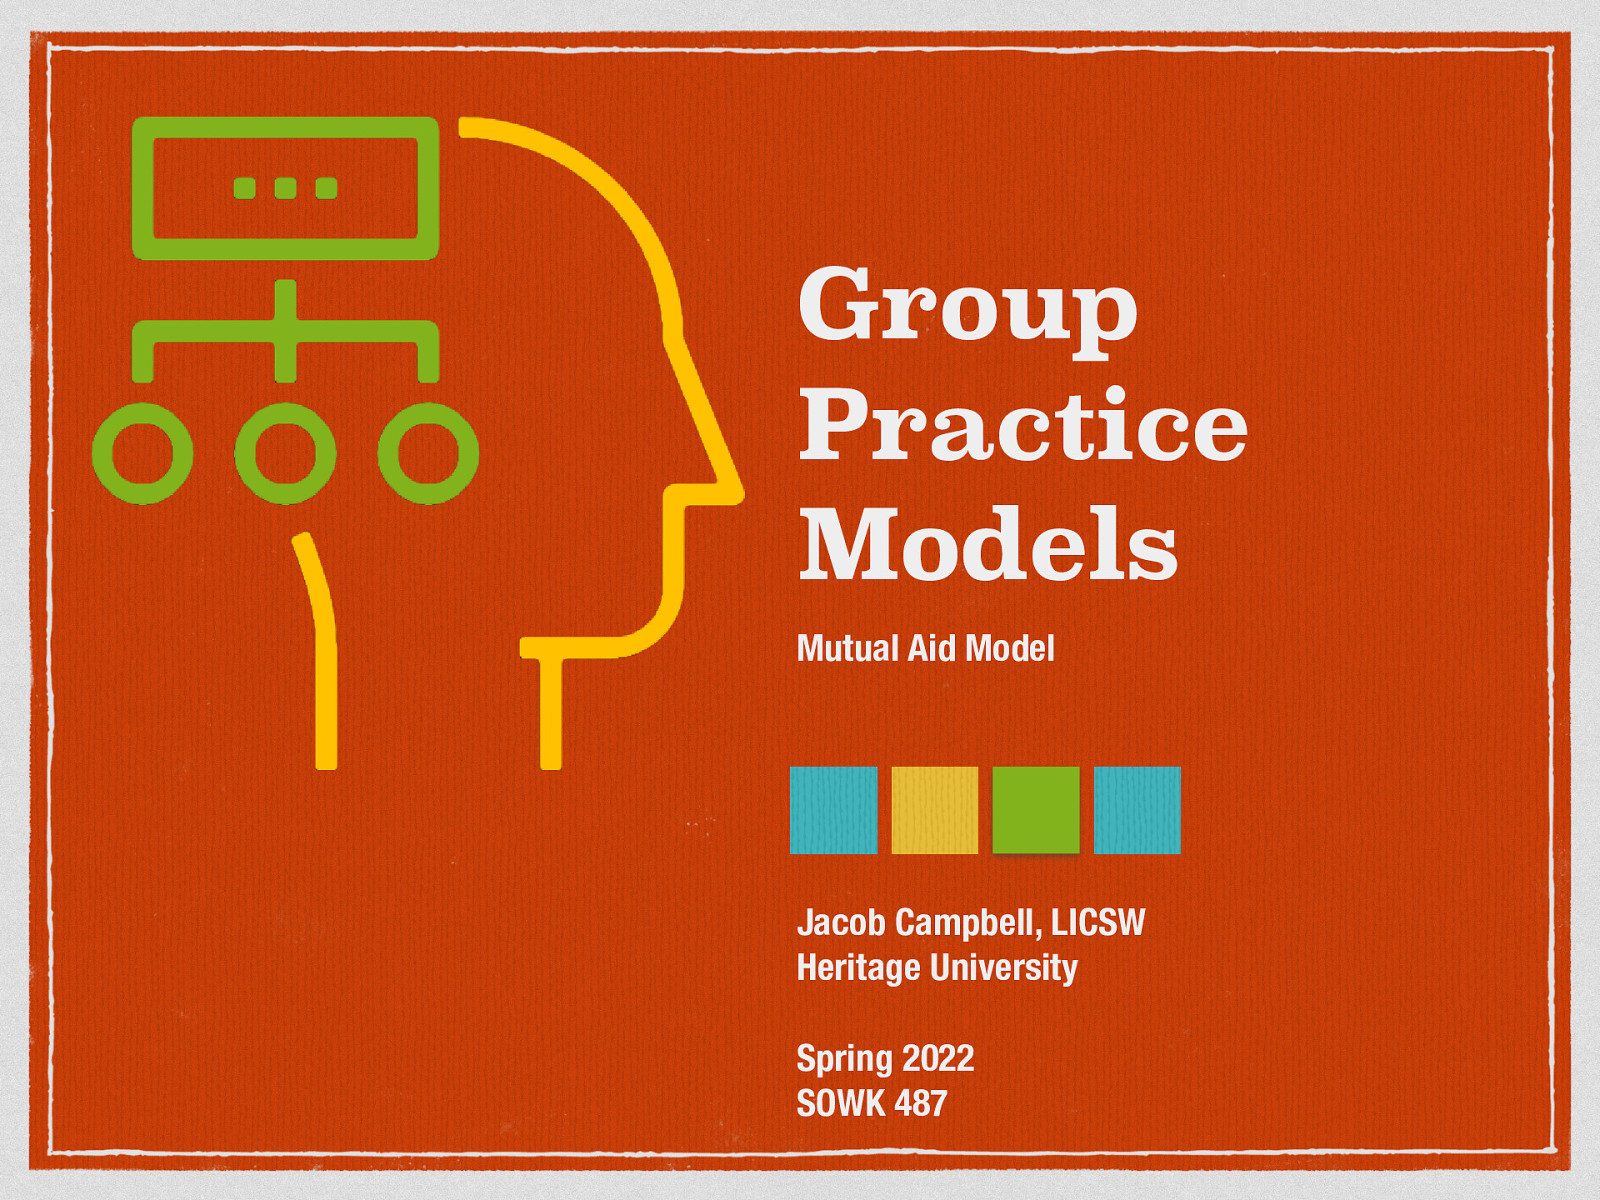 SOWK 487 - Week 08 - Group Practice Models - Mutual Aid